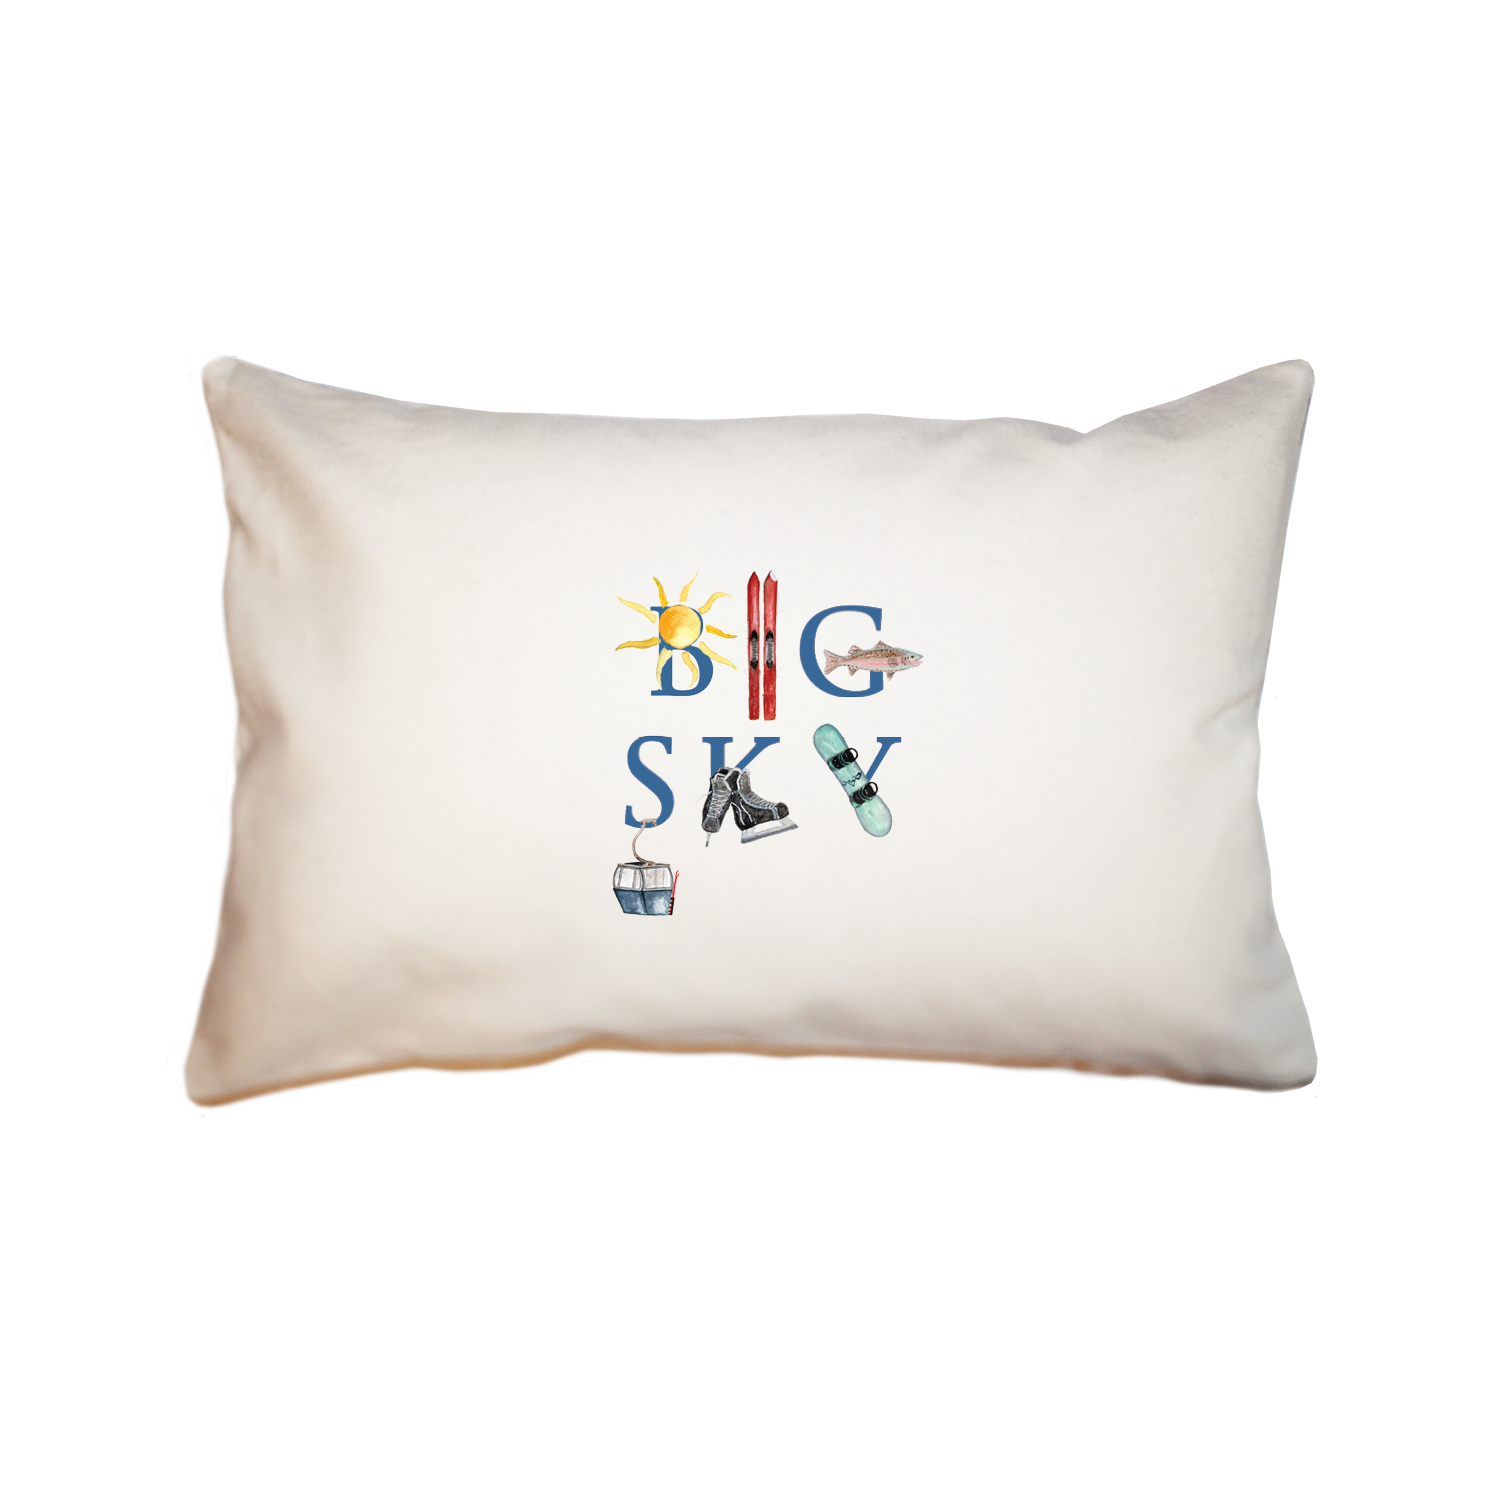 Big Sky large rectangle pillow